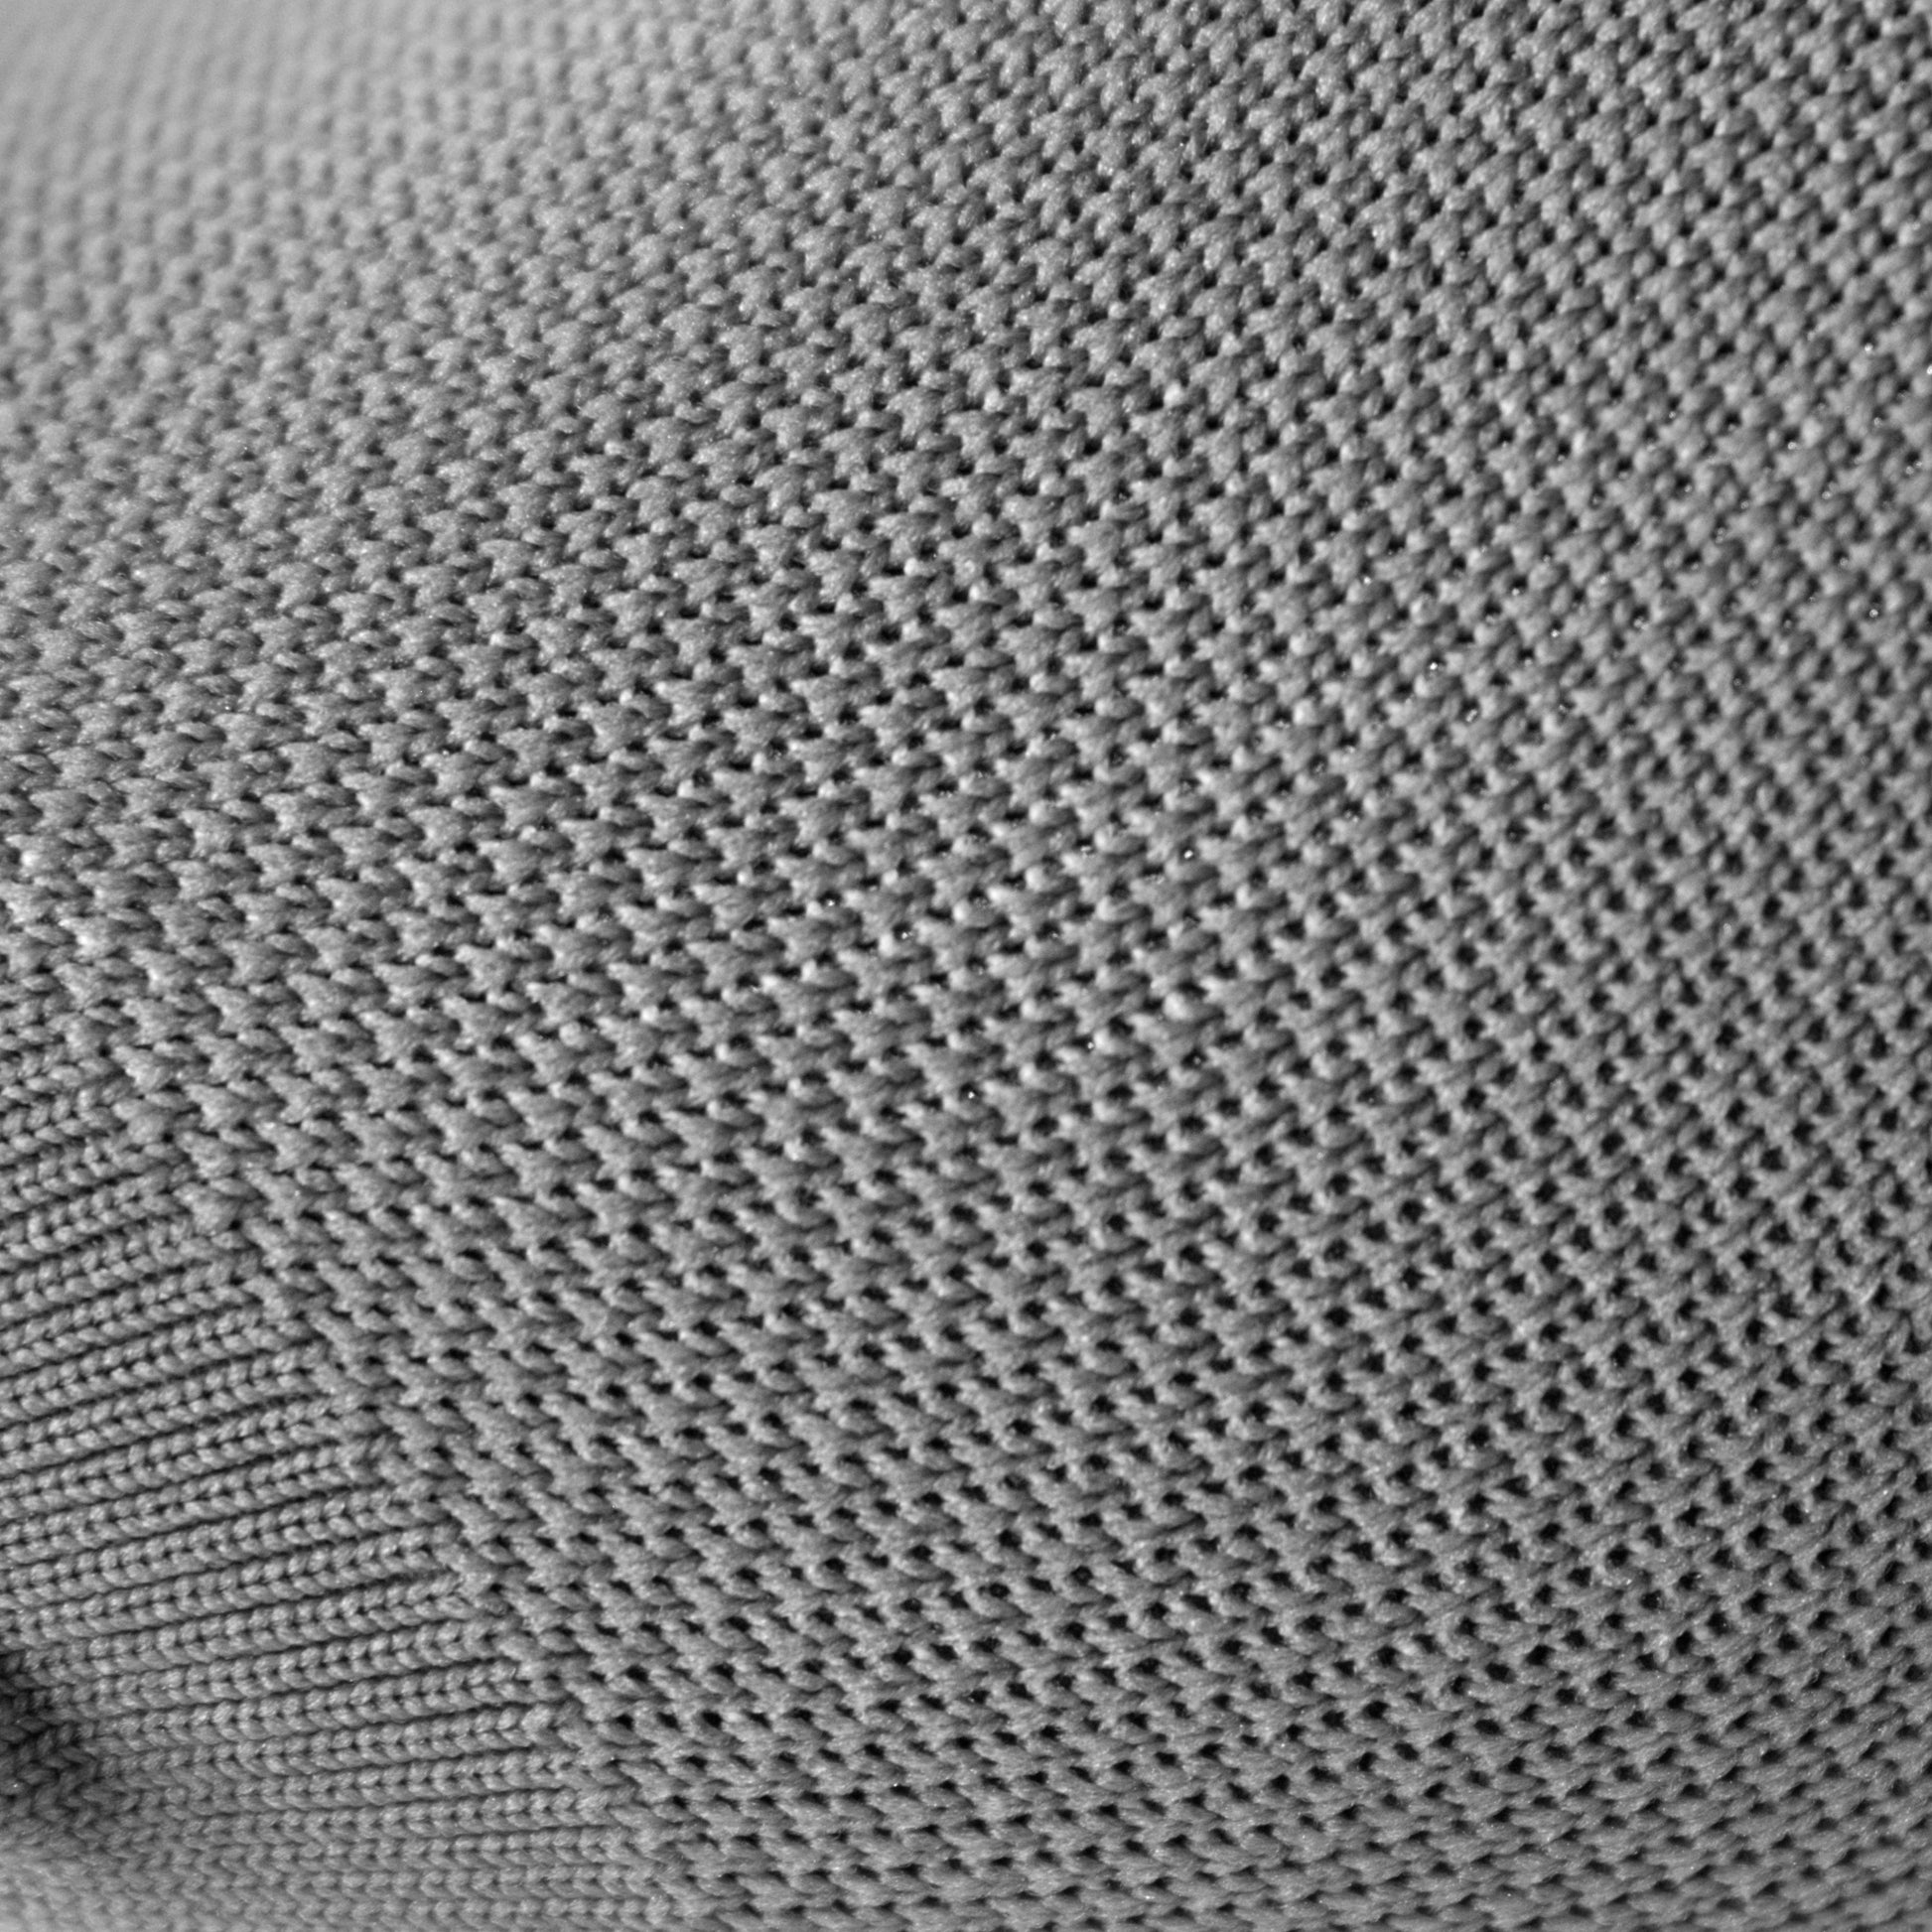 Detalle de tejido en medias de compresión color gris